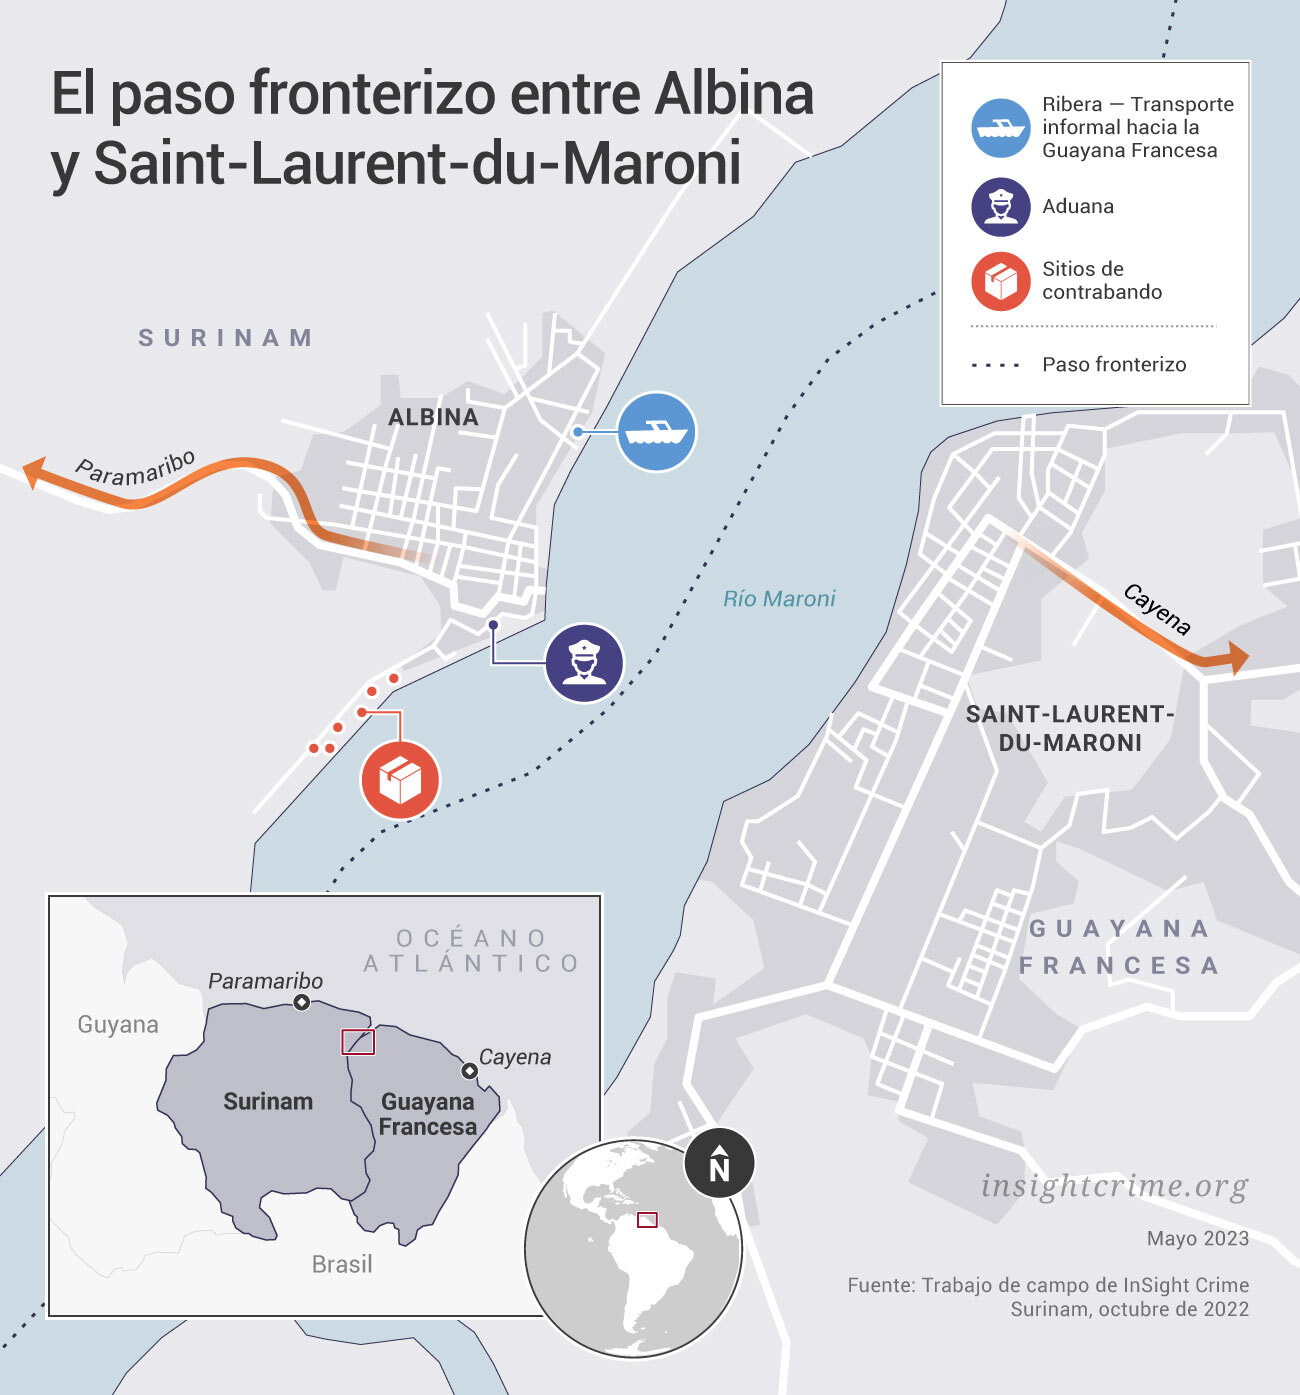 Este mapa muestra el paso fronterizo entre Albina y Saint-Laurent-du-Maroni, las ciudades fronterizas entre Surinam y Guyana Francesa